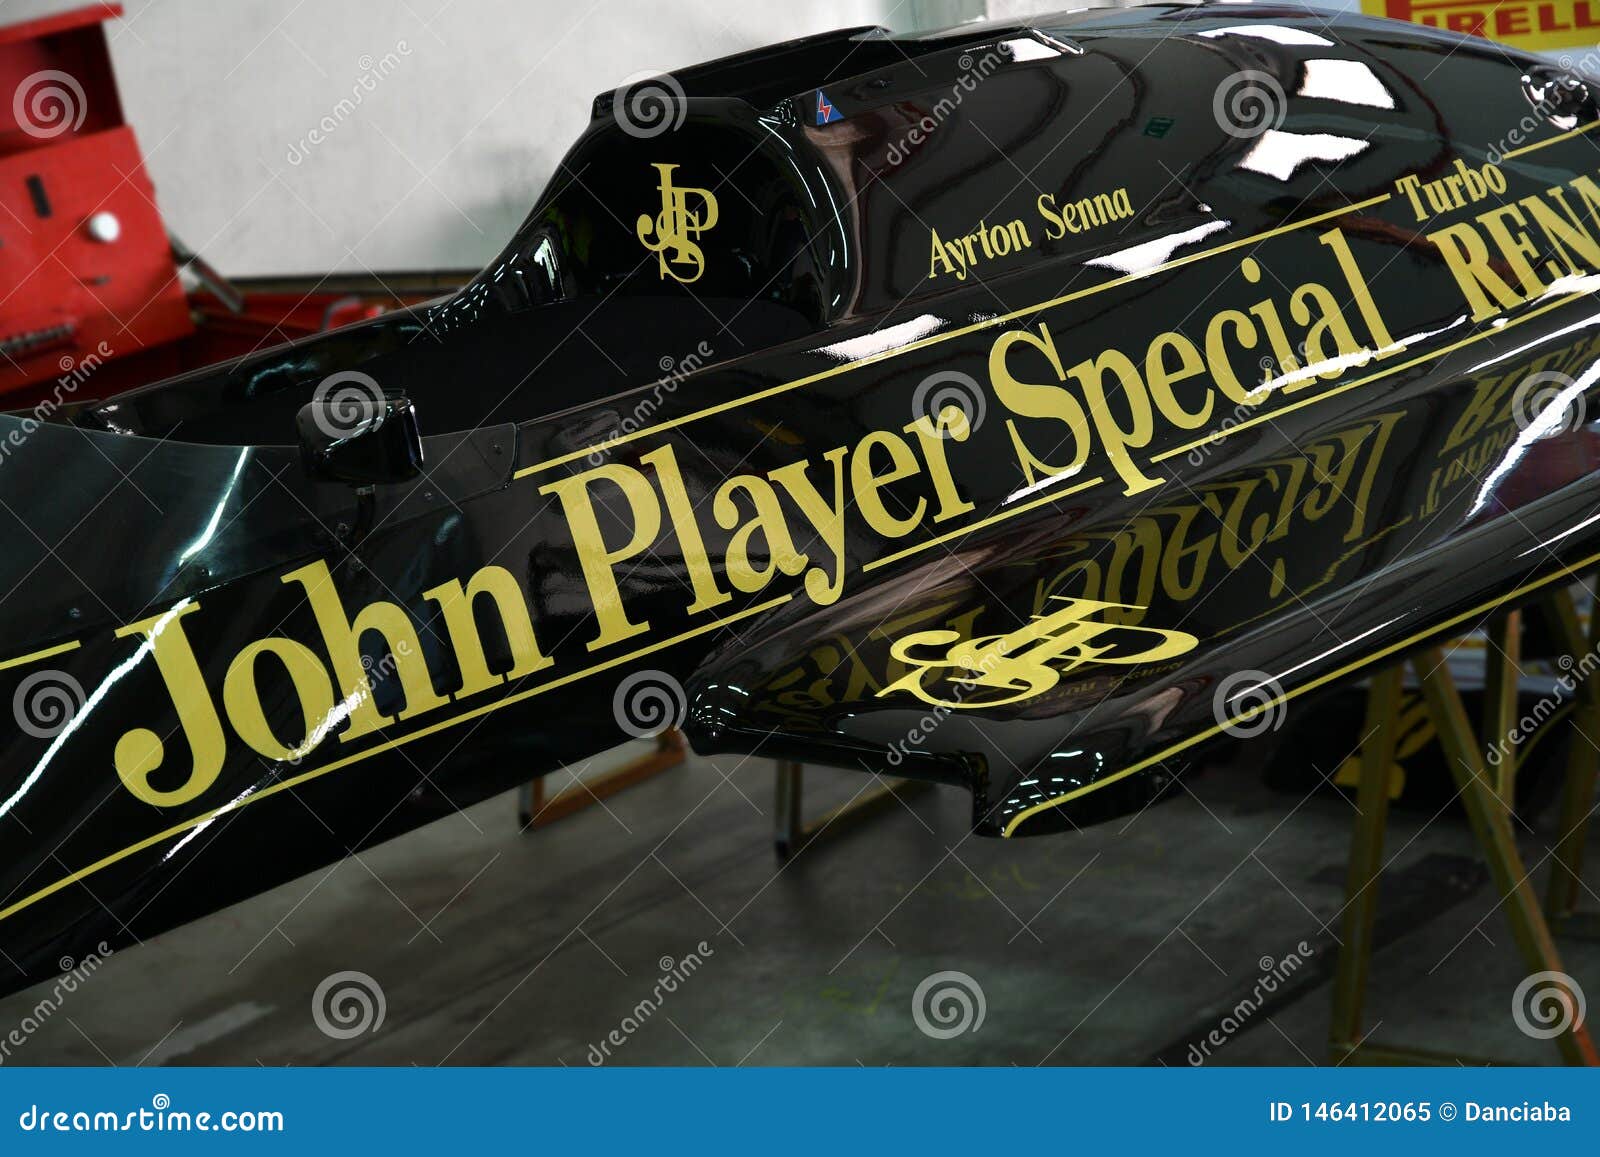 Klassisch Motor Rennen John Player Lotus Jps Ayrton Senna 32 Medium Blechschild